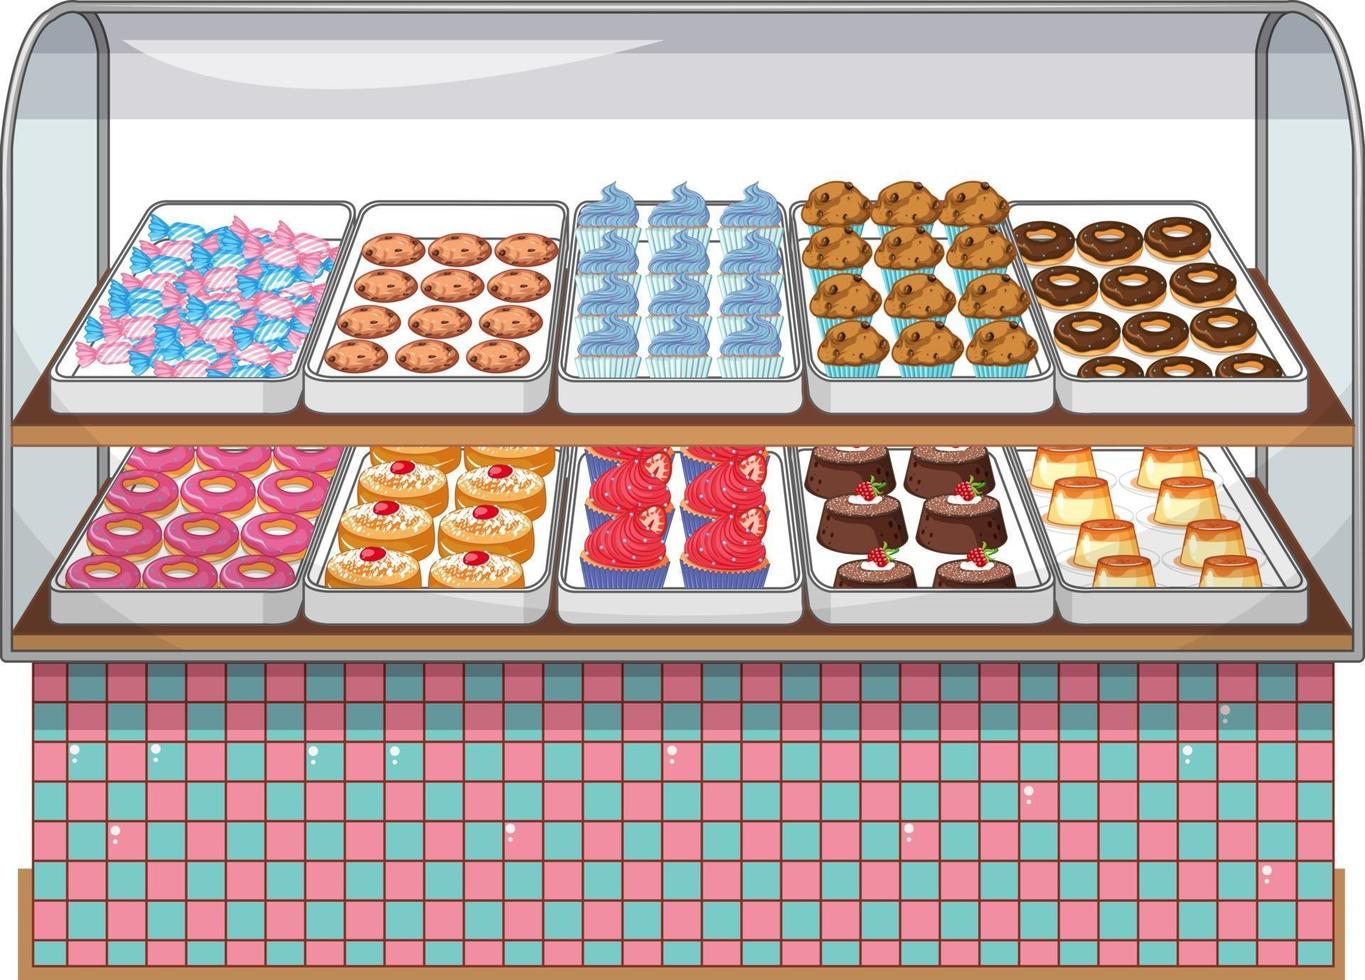 Bäckerei-Ausstellungsstand mit Kuchen und Süßem auf weißem Hintergrund vektor